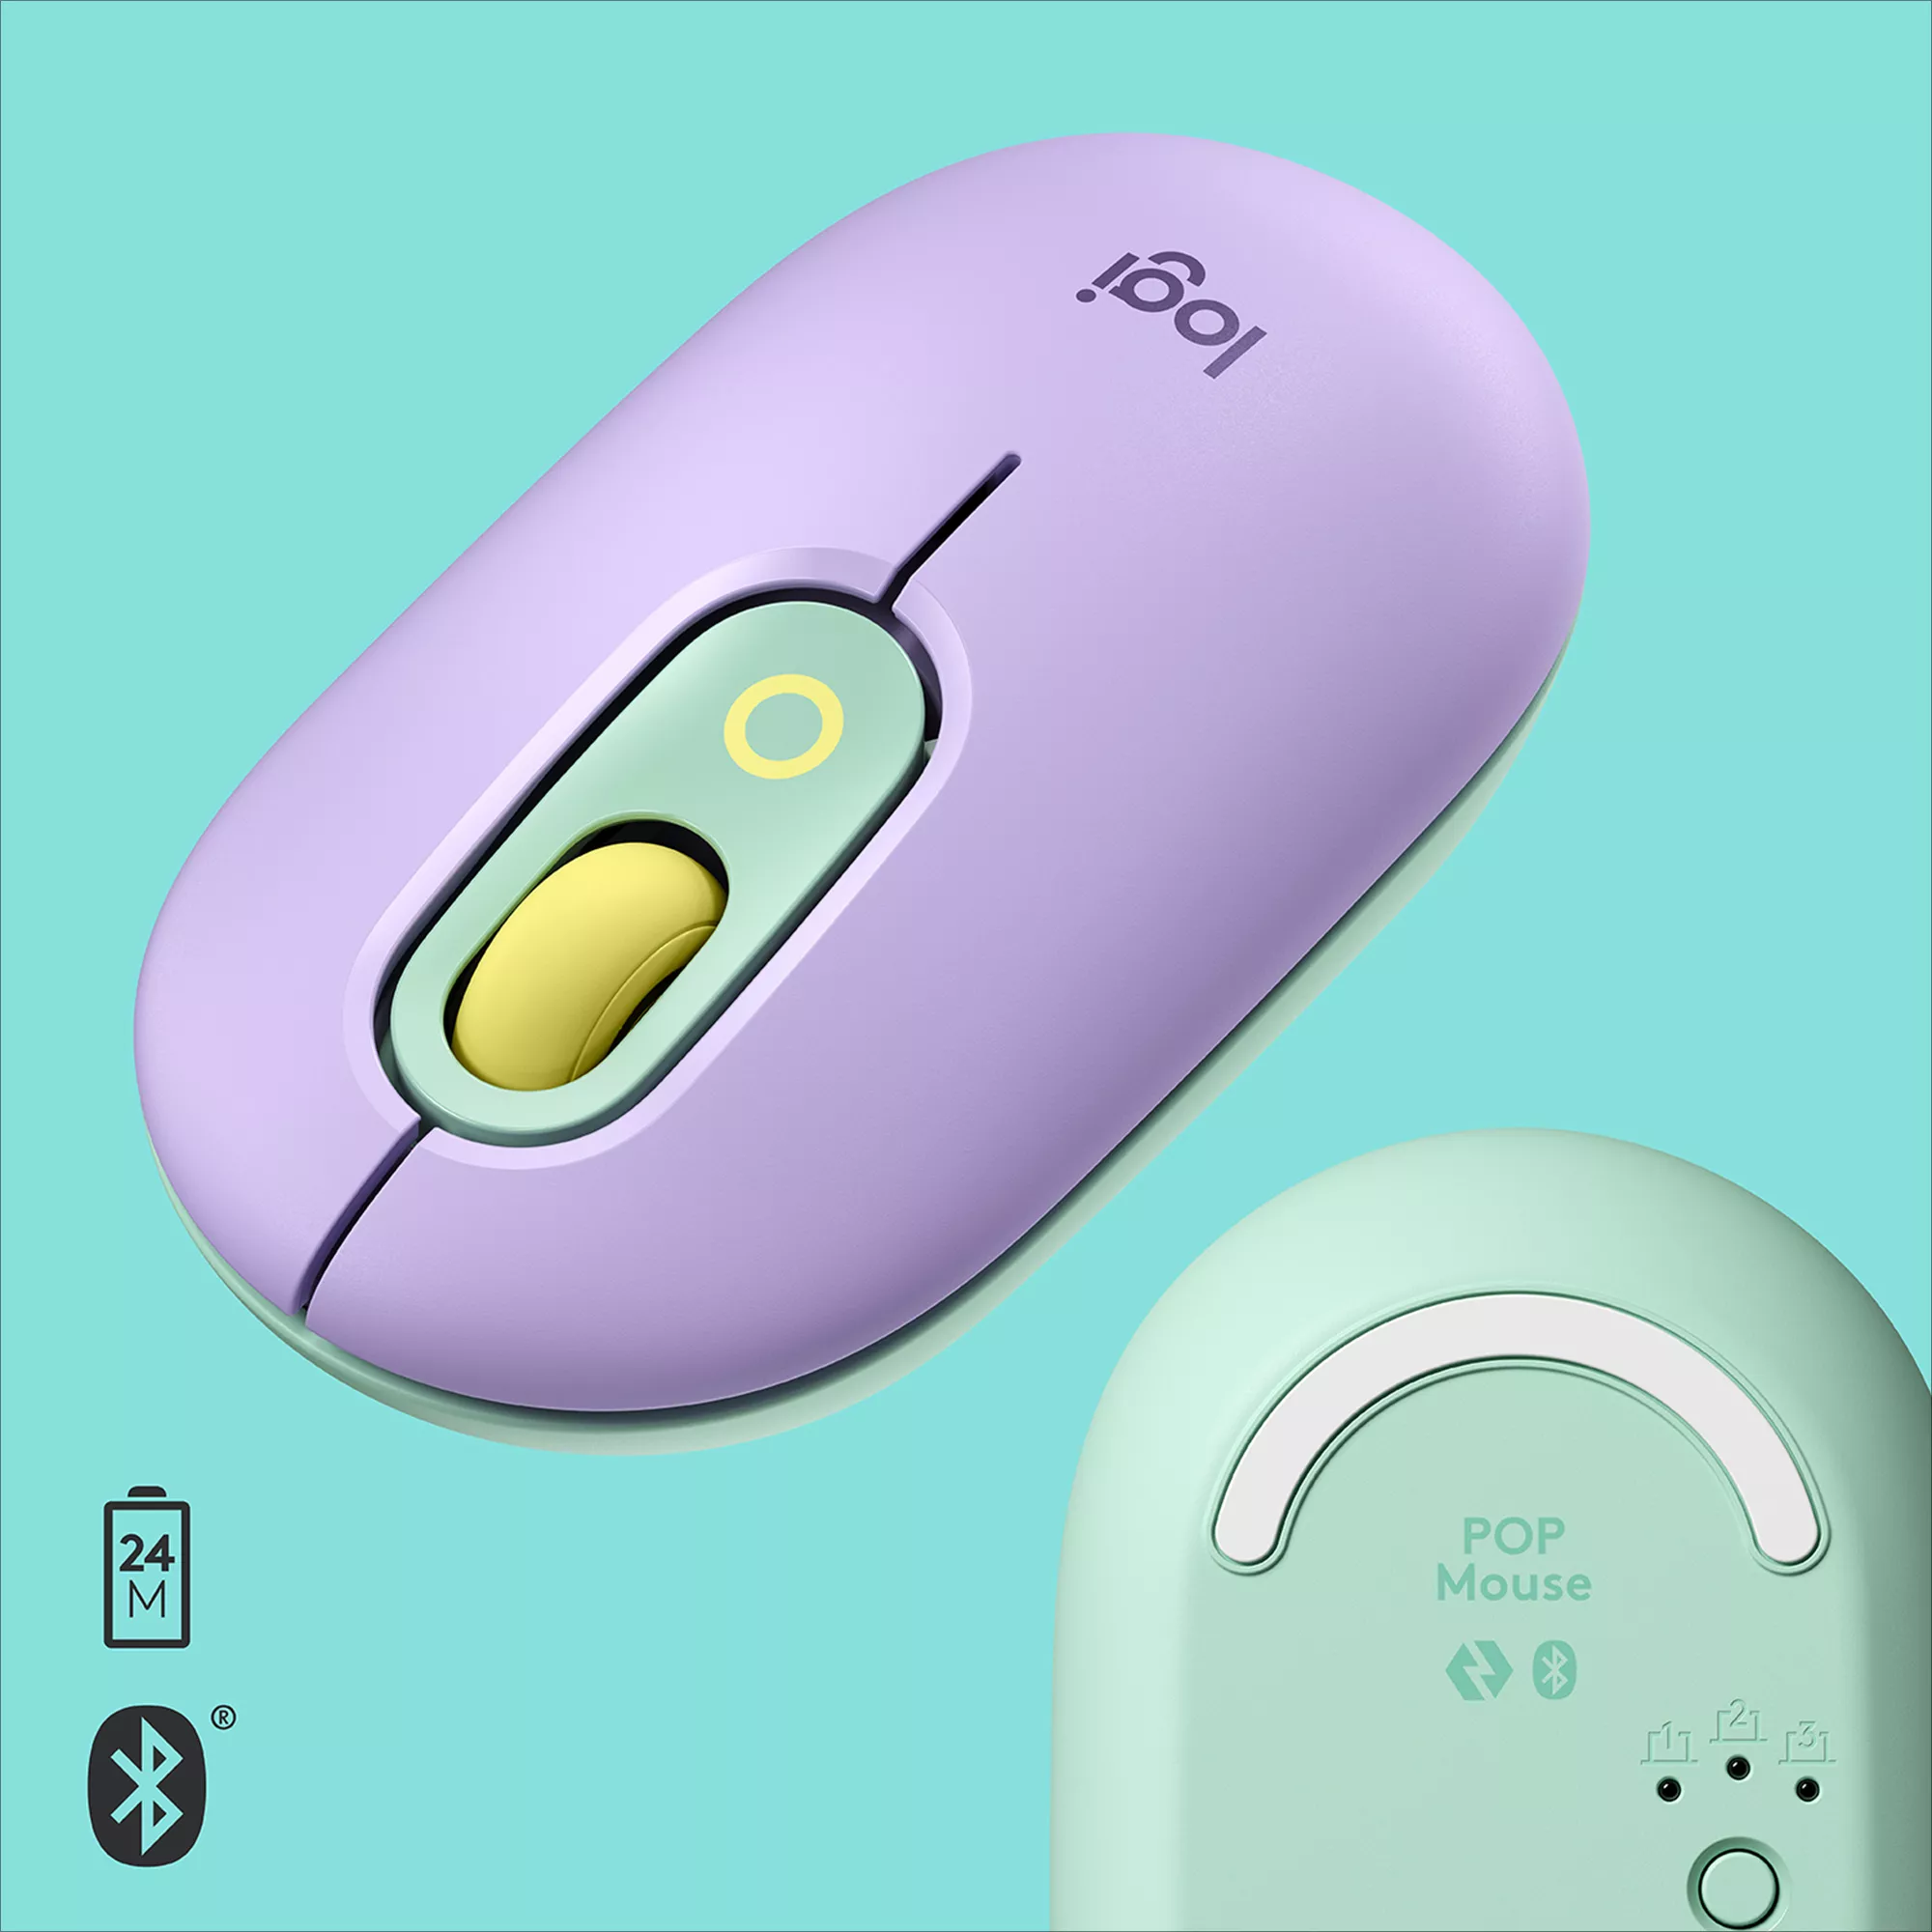 Vente LOGITECH POP Mouse customisable emoji optical 4 buttons Logitech au meilleur prix - visuel 6